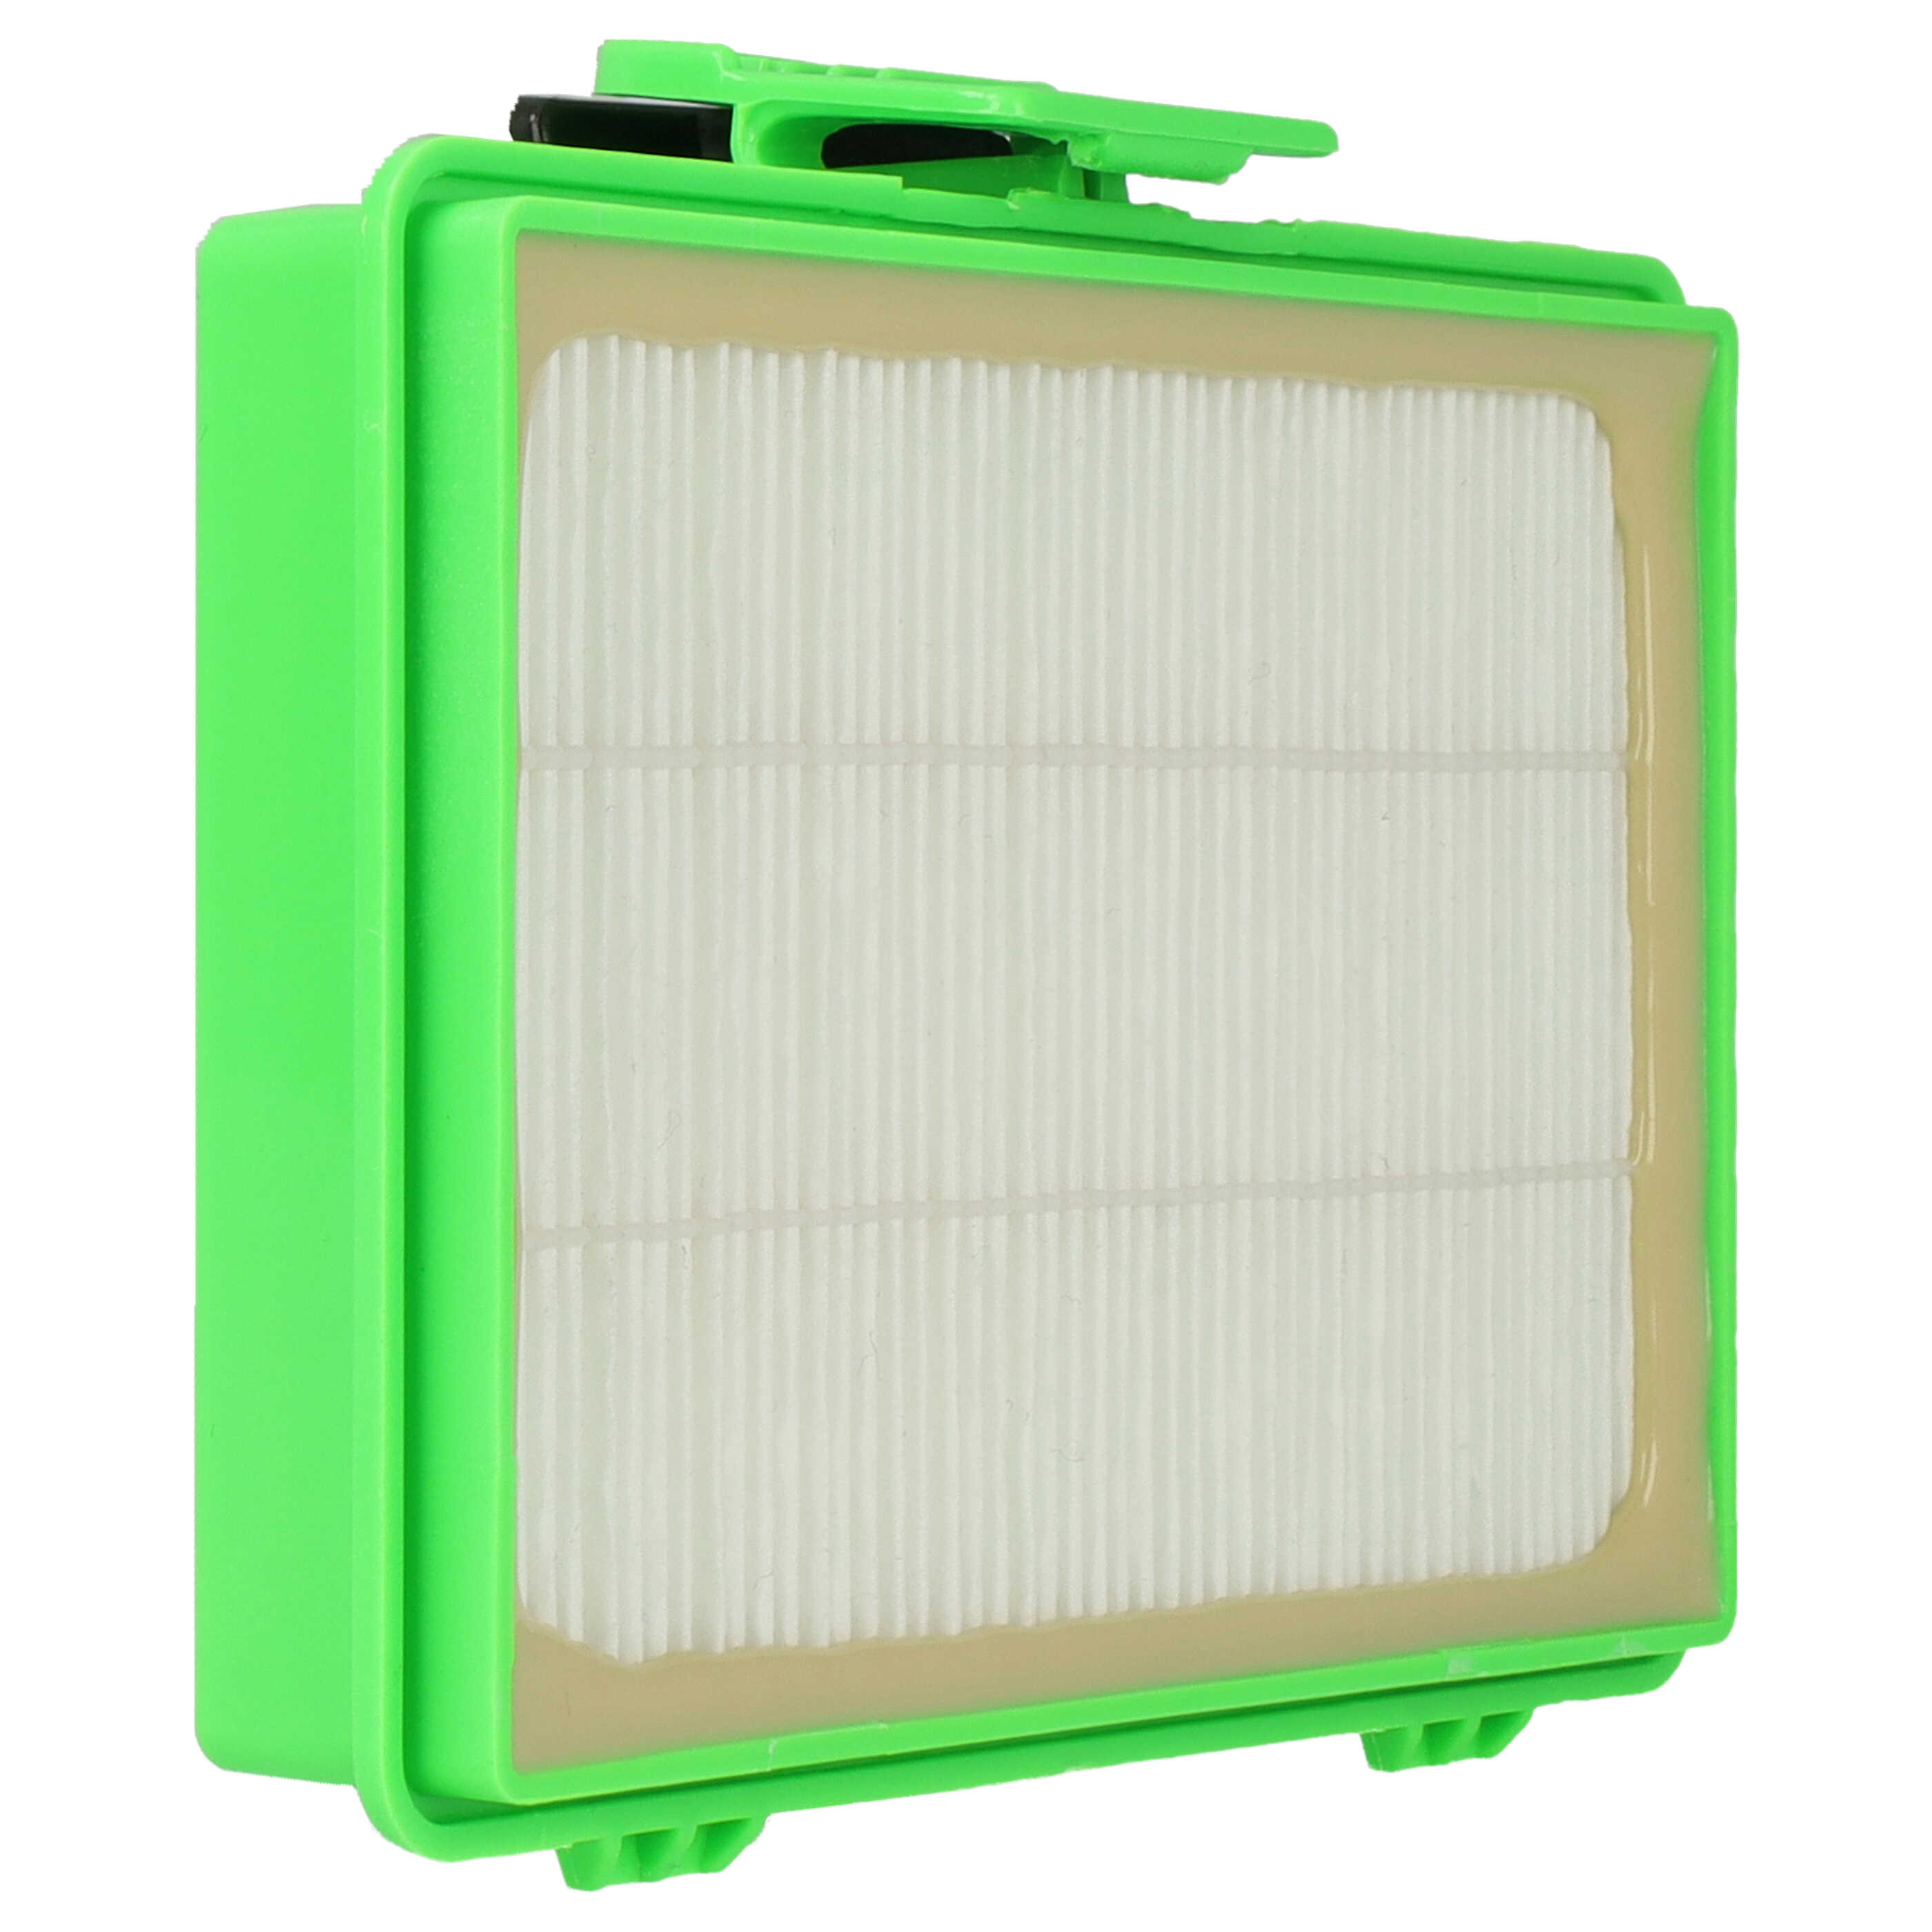 Filtro reemplaza Rowenta RS-RT9977 para aspiradora - filtro Hepa blanco / verde